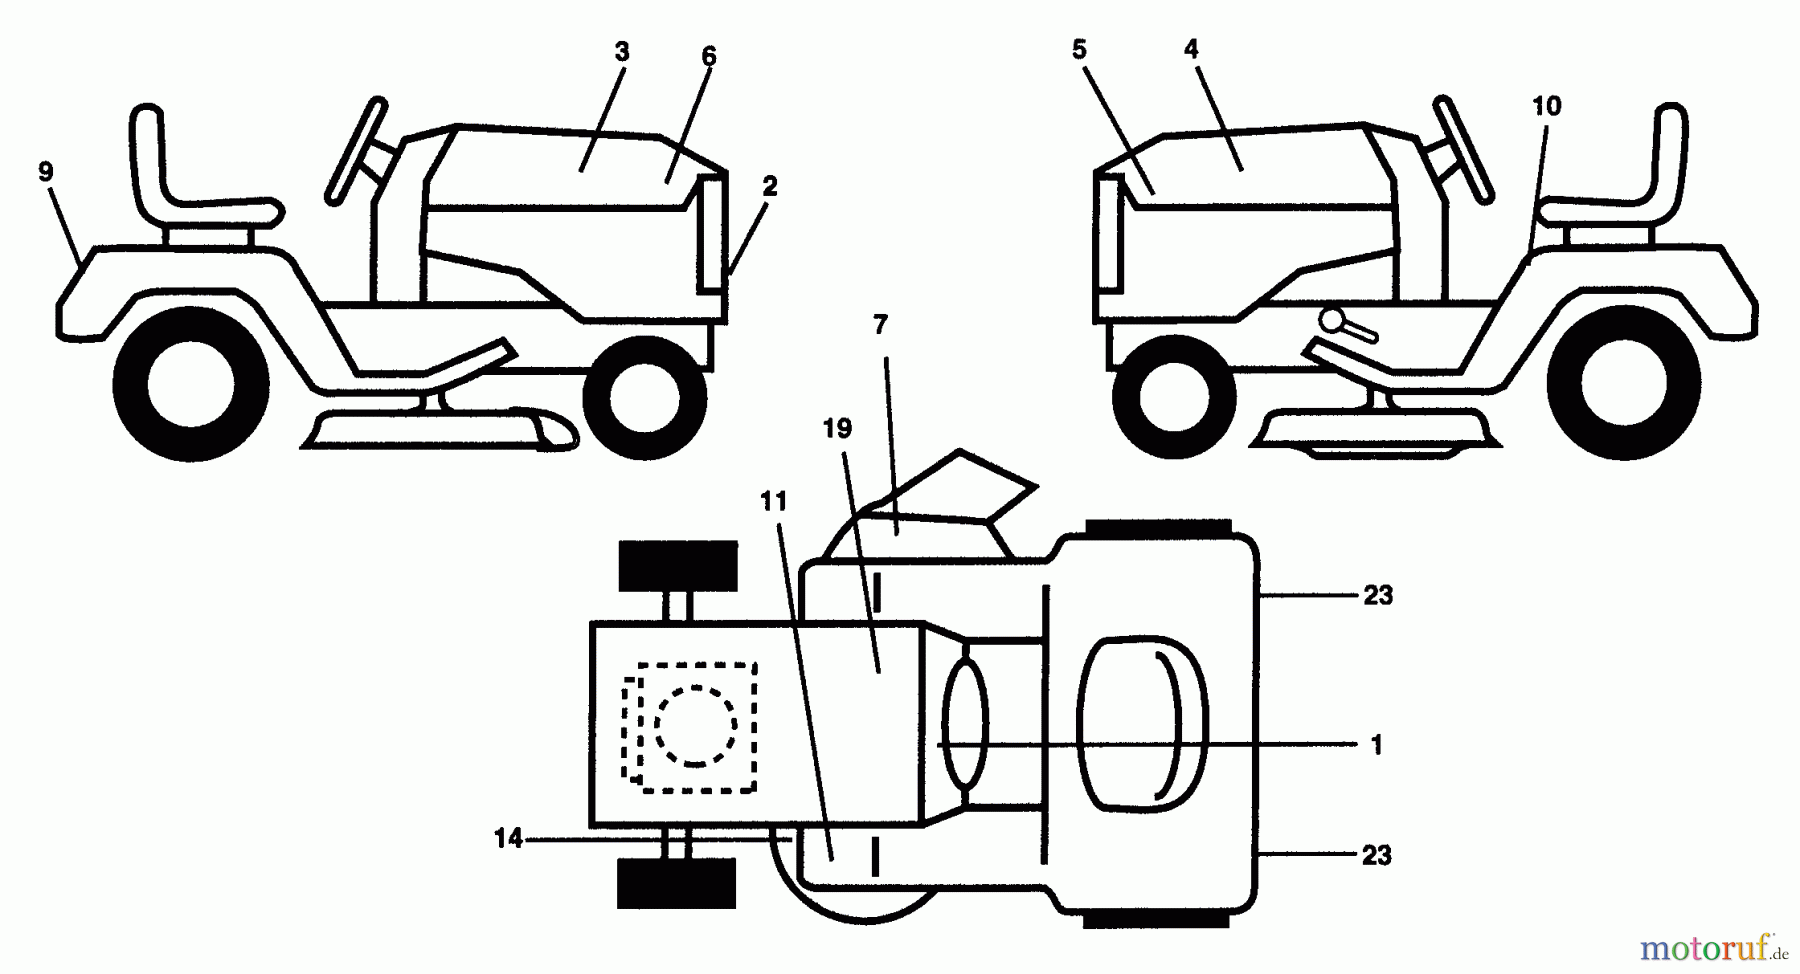  Husqvarna Rasen und Garten Traktoren GT 200 (HN2050A) - Husqvarna Garden Tractor (1993-12 & After) Decals